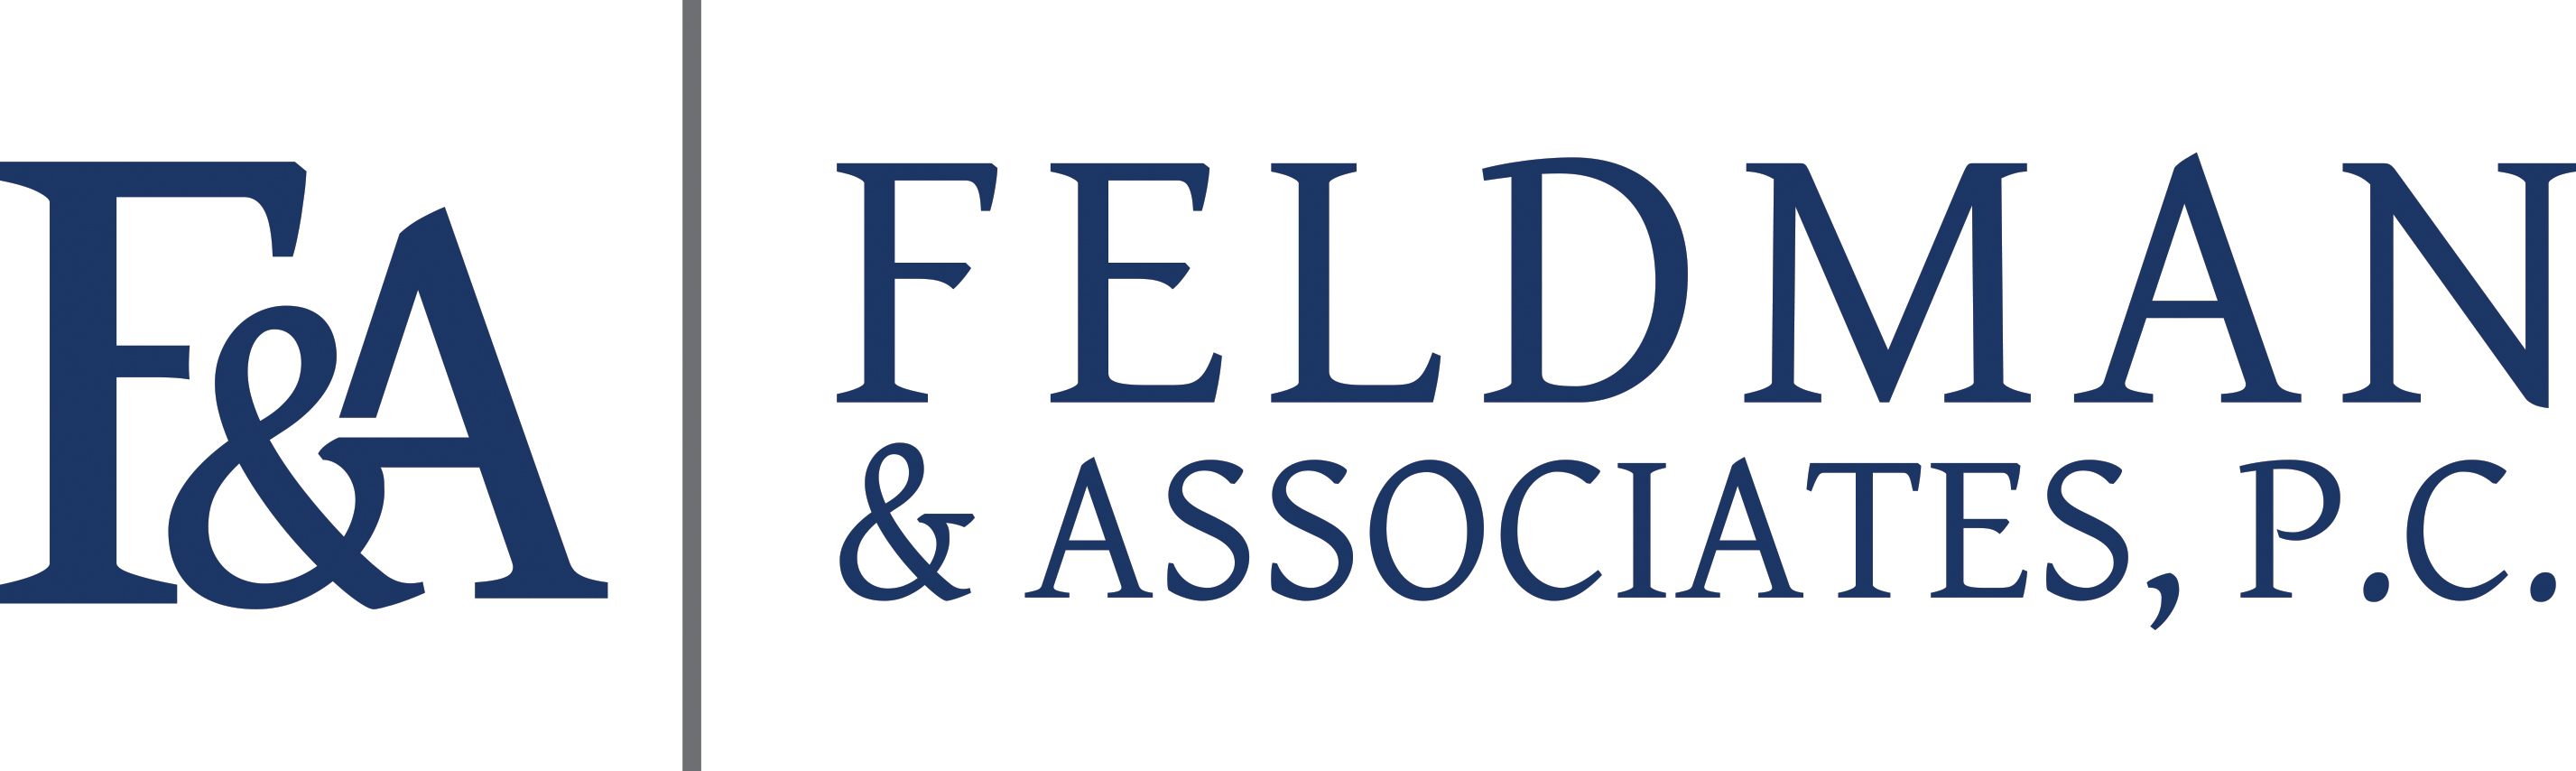 Feldman & Associates, P.C.  Logo